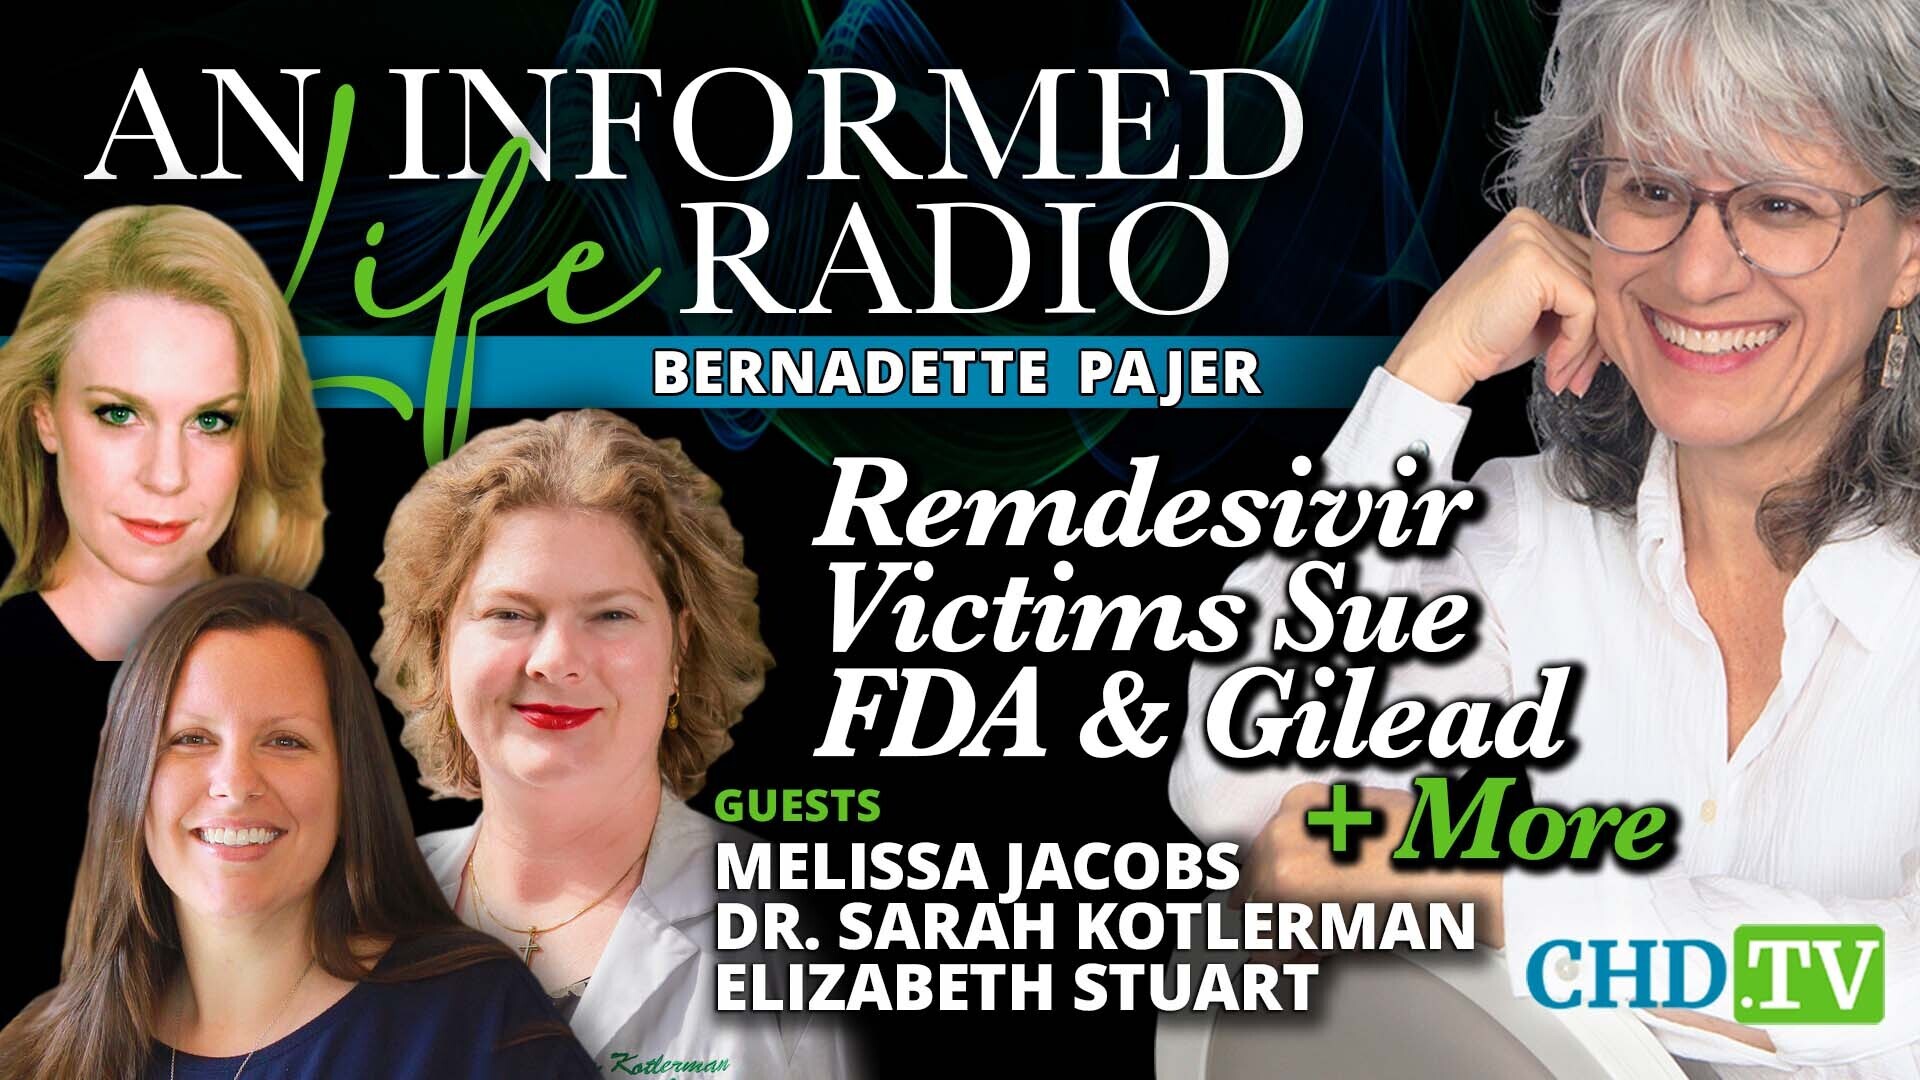 Remdesivir Victims Sue FDA, Gilead + More